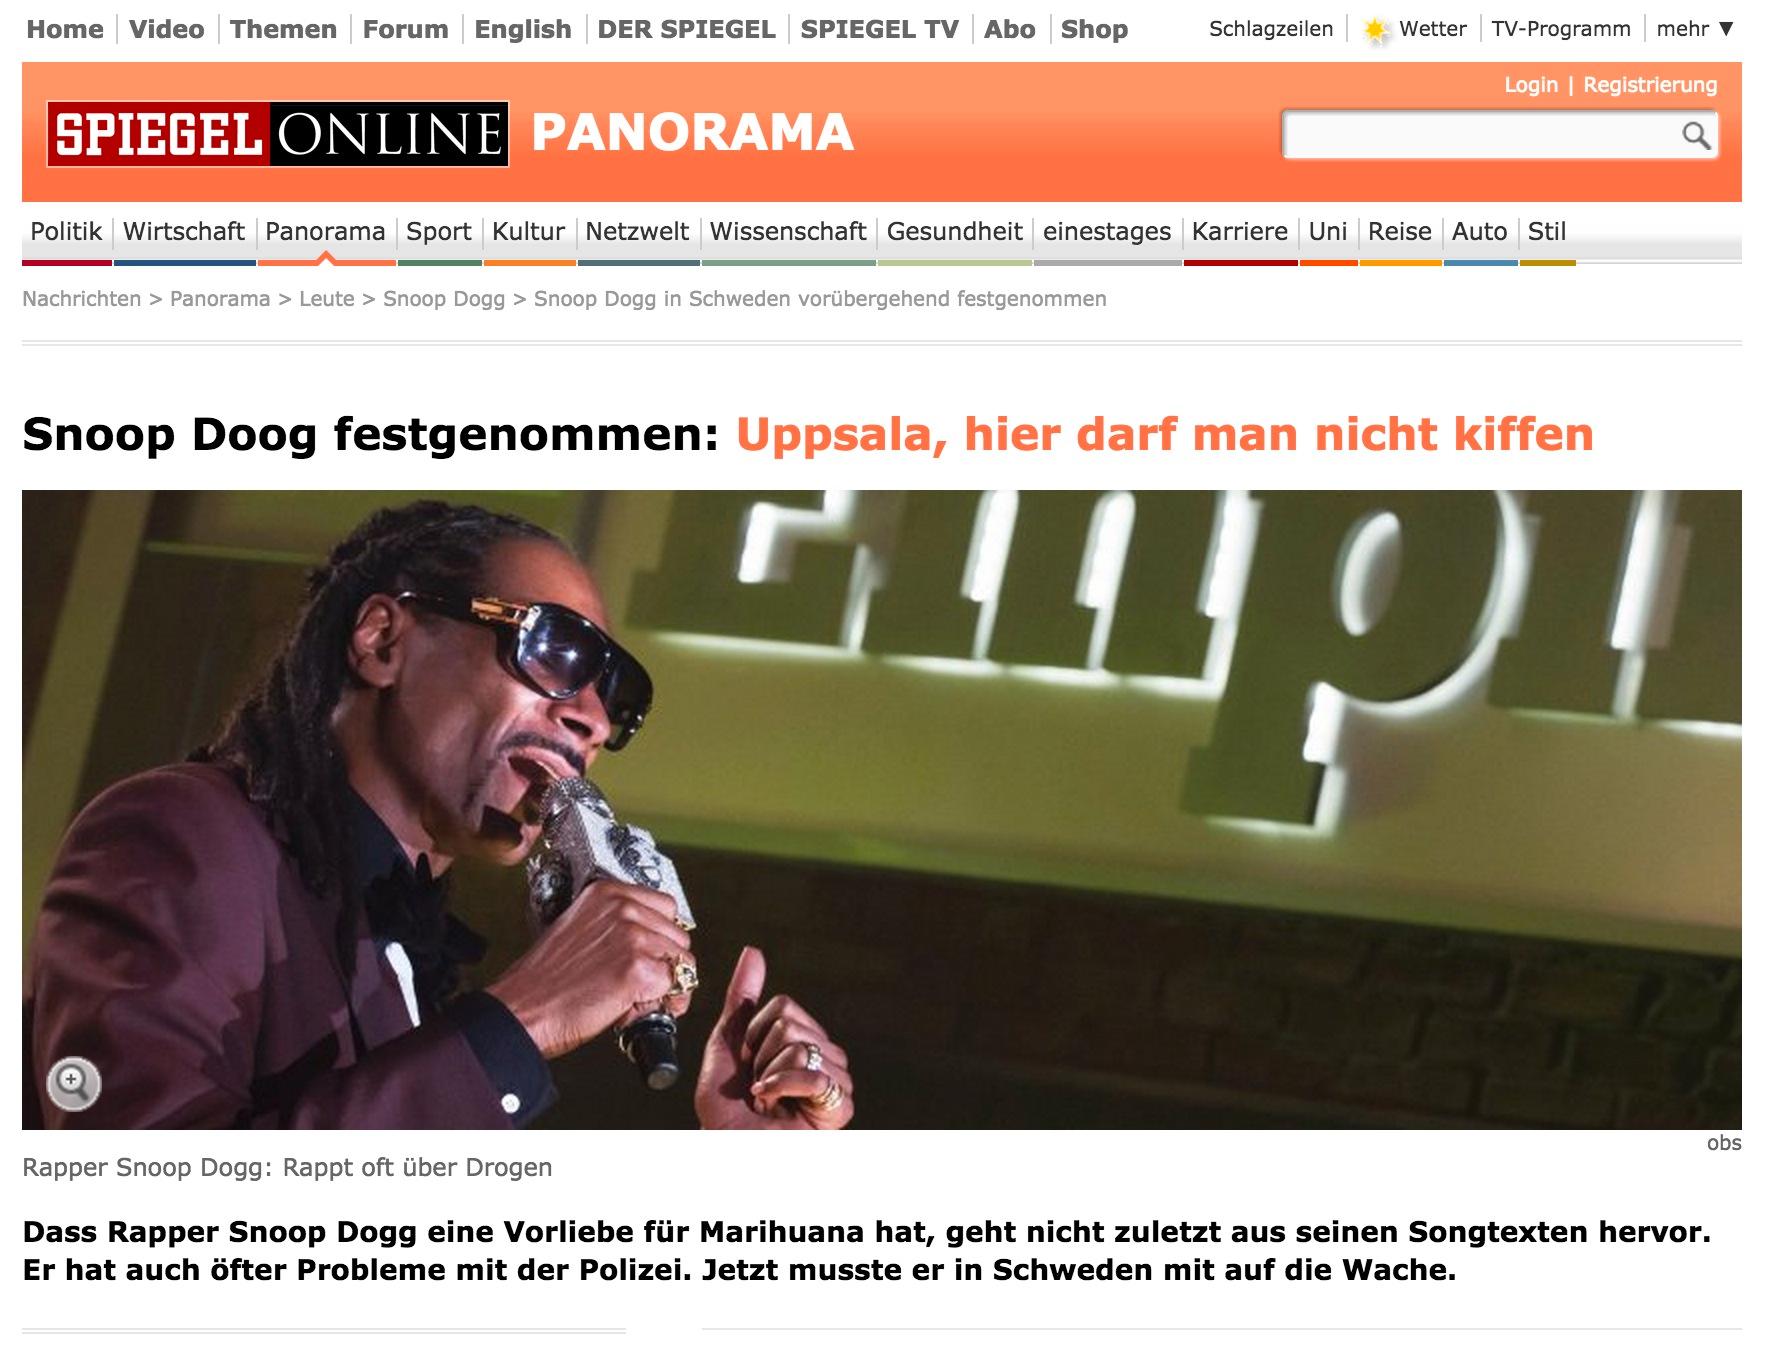 Der Spiegel Snoop Doog tagen av polis: Uppsala, här får man inte röka hasch